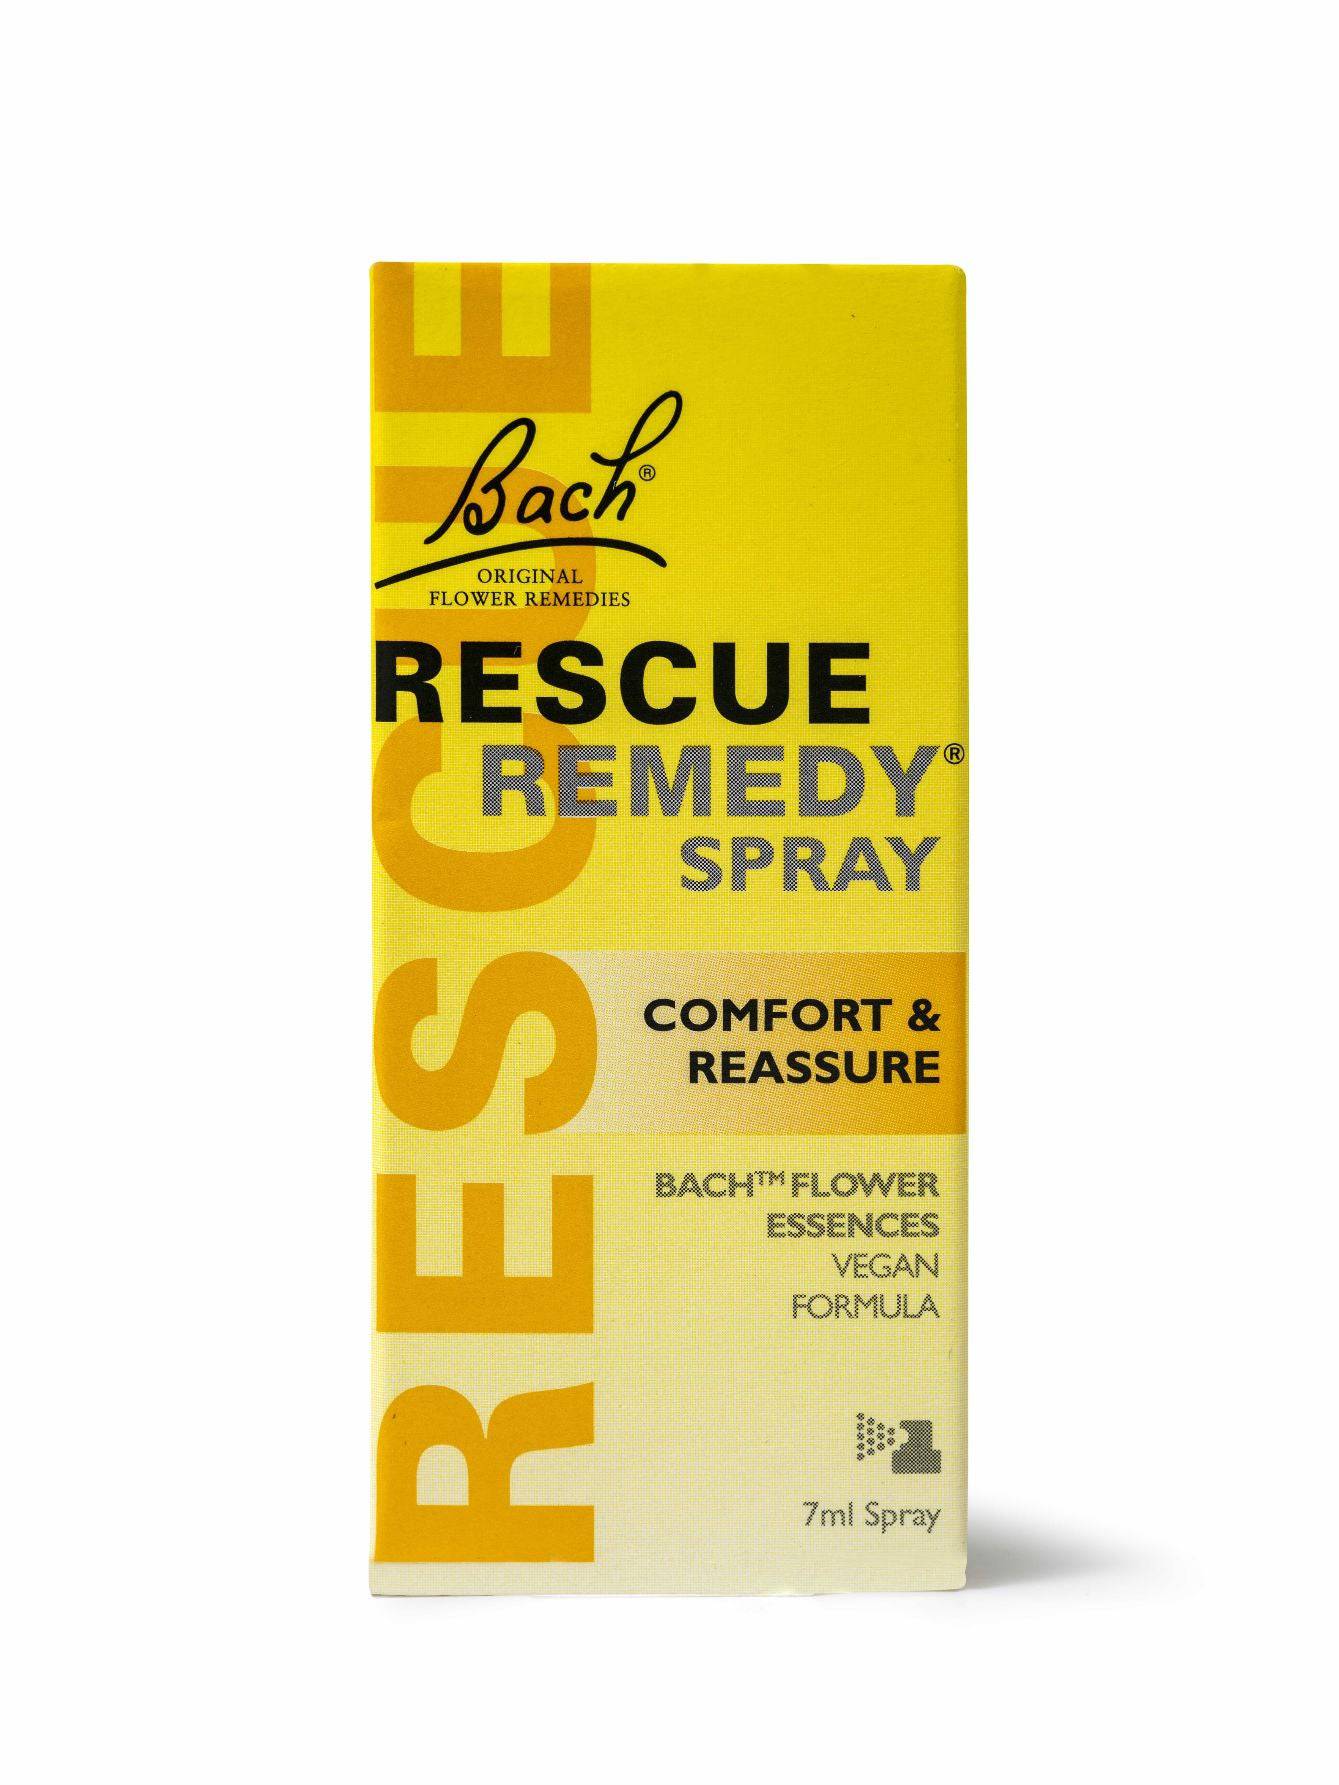 RESCUE Remedy Spray 7ml